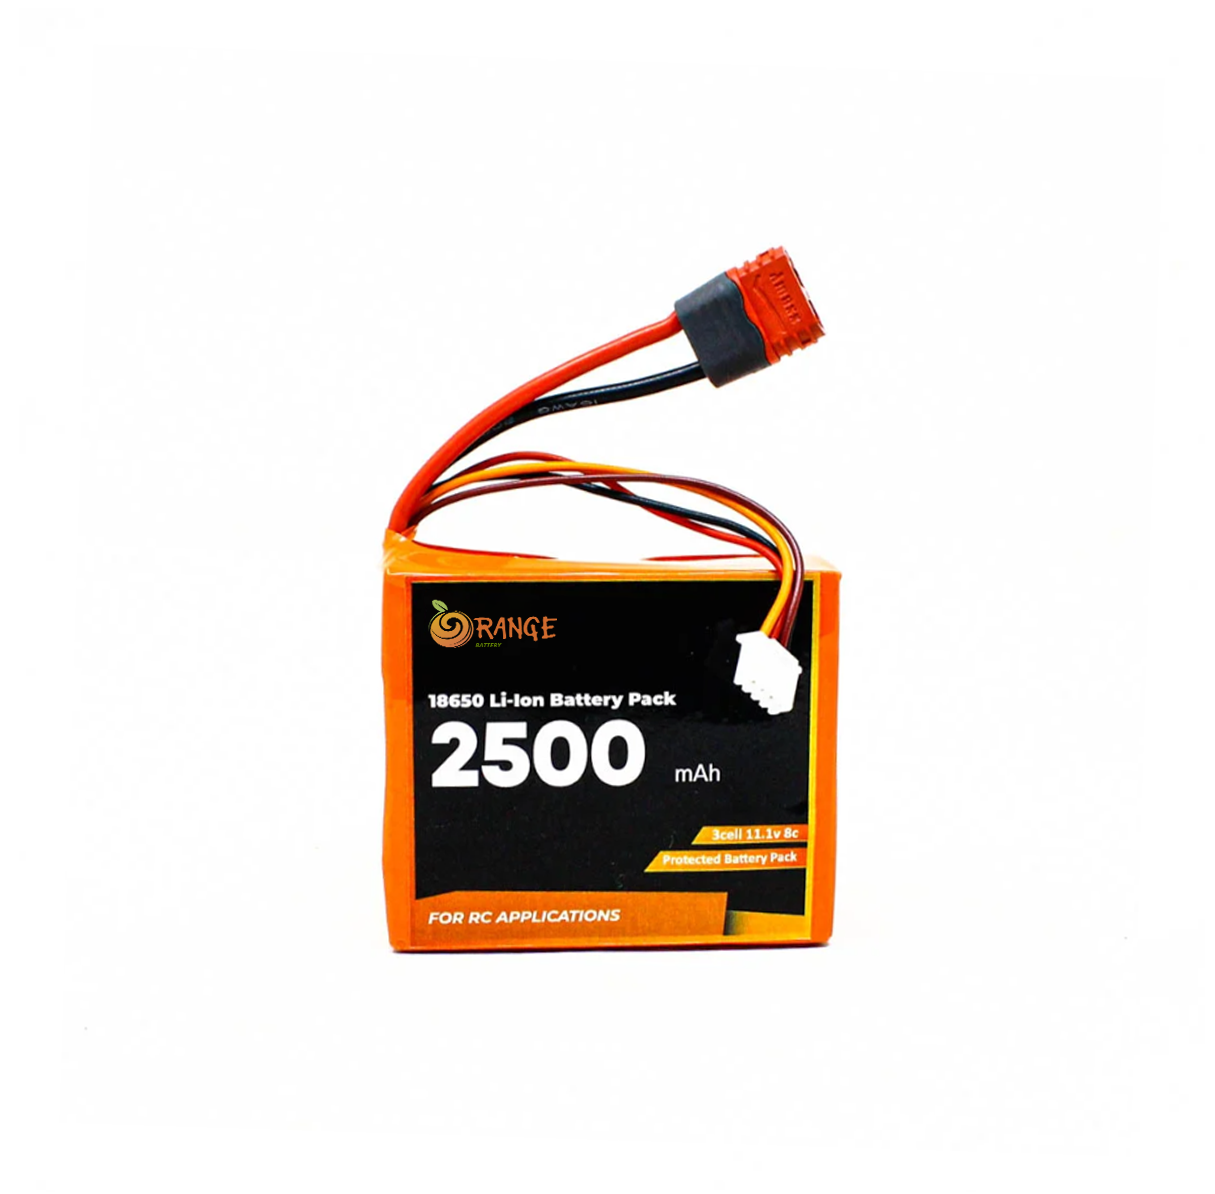 Orange ISR 18650 11.1V 2500mAh 8C 3S1P Li-ion Battery Pack